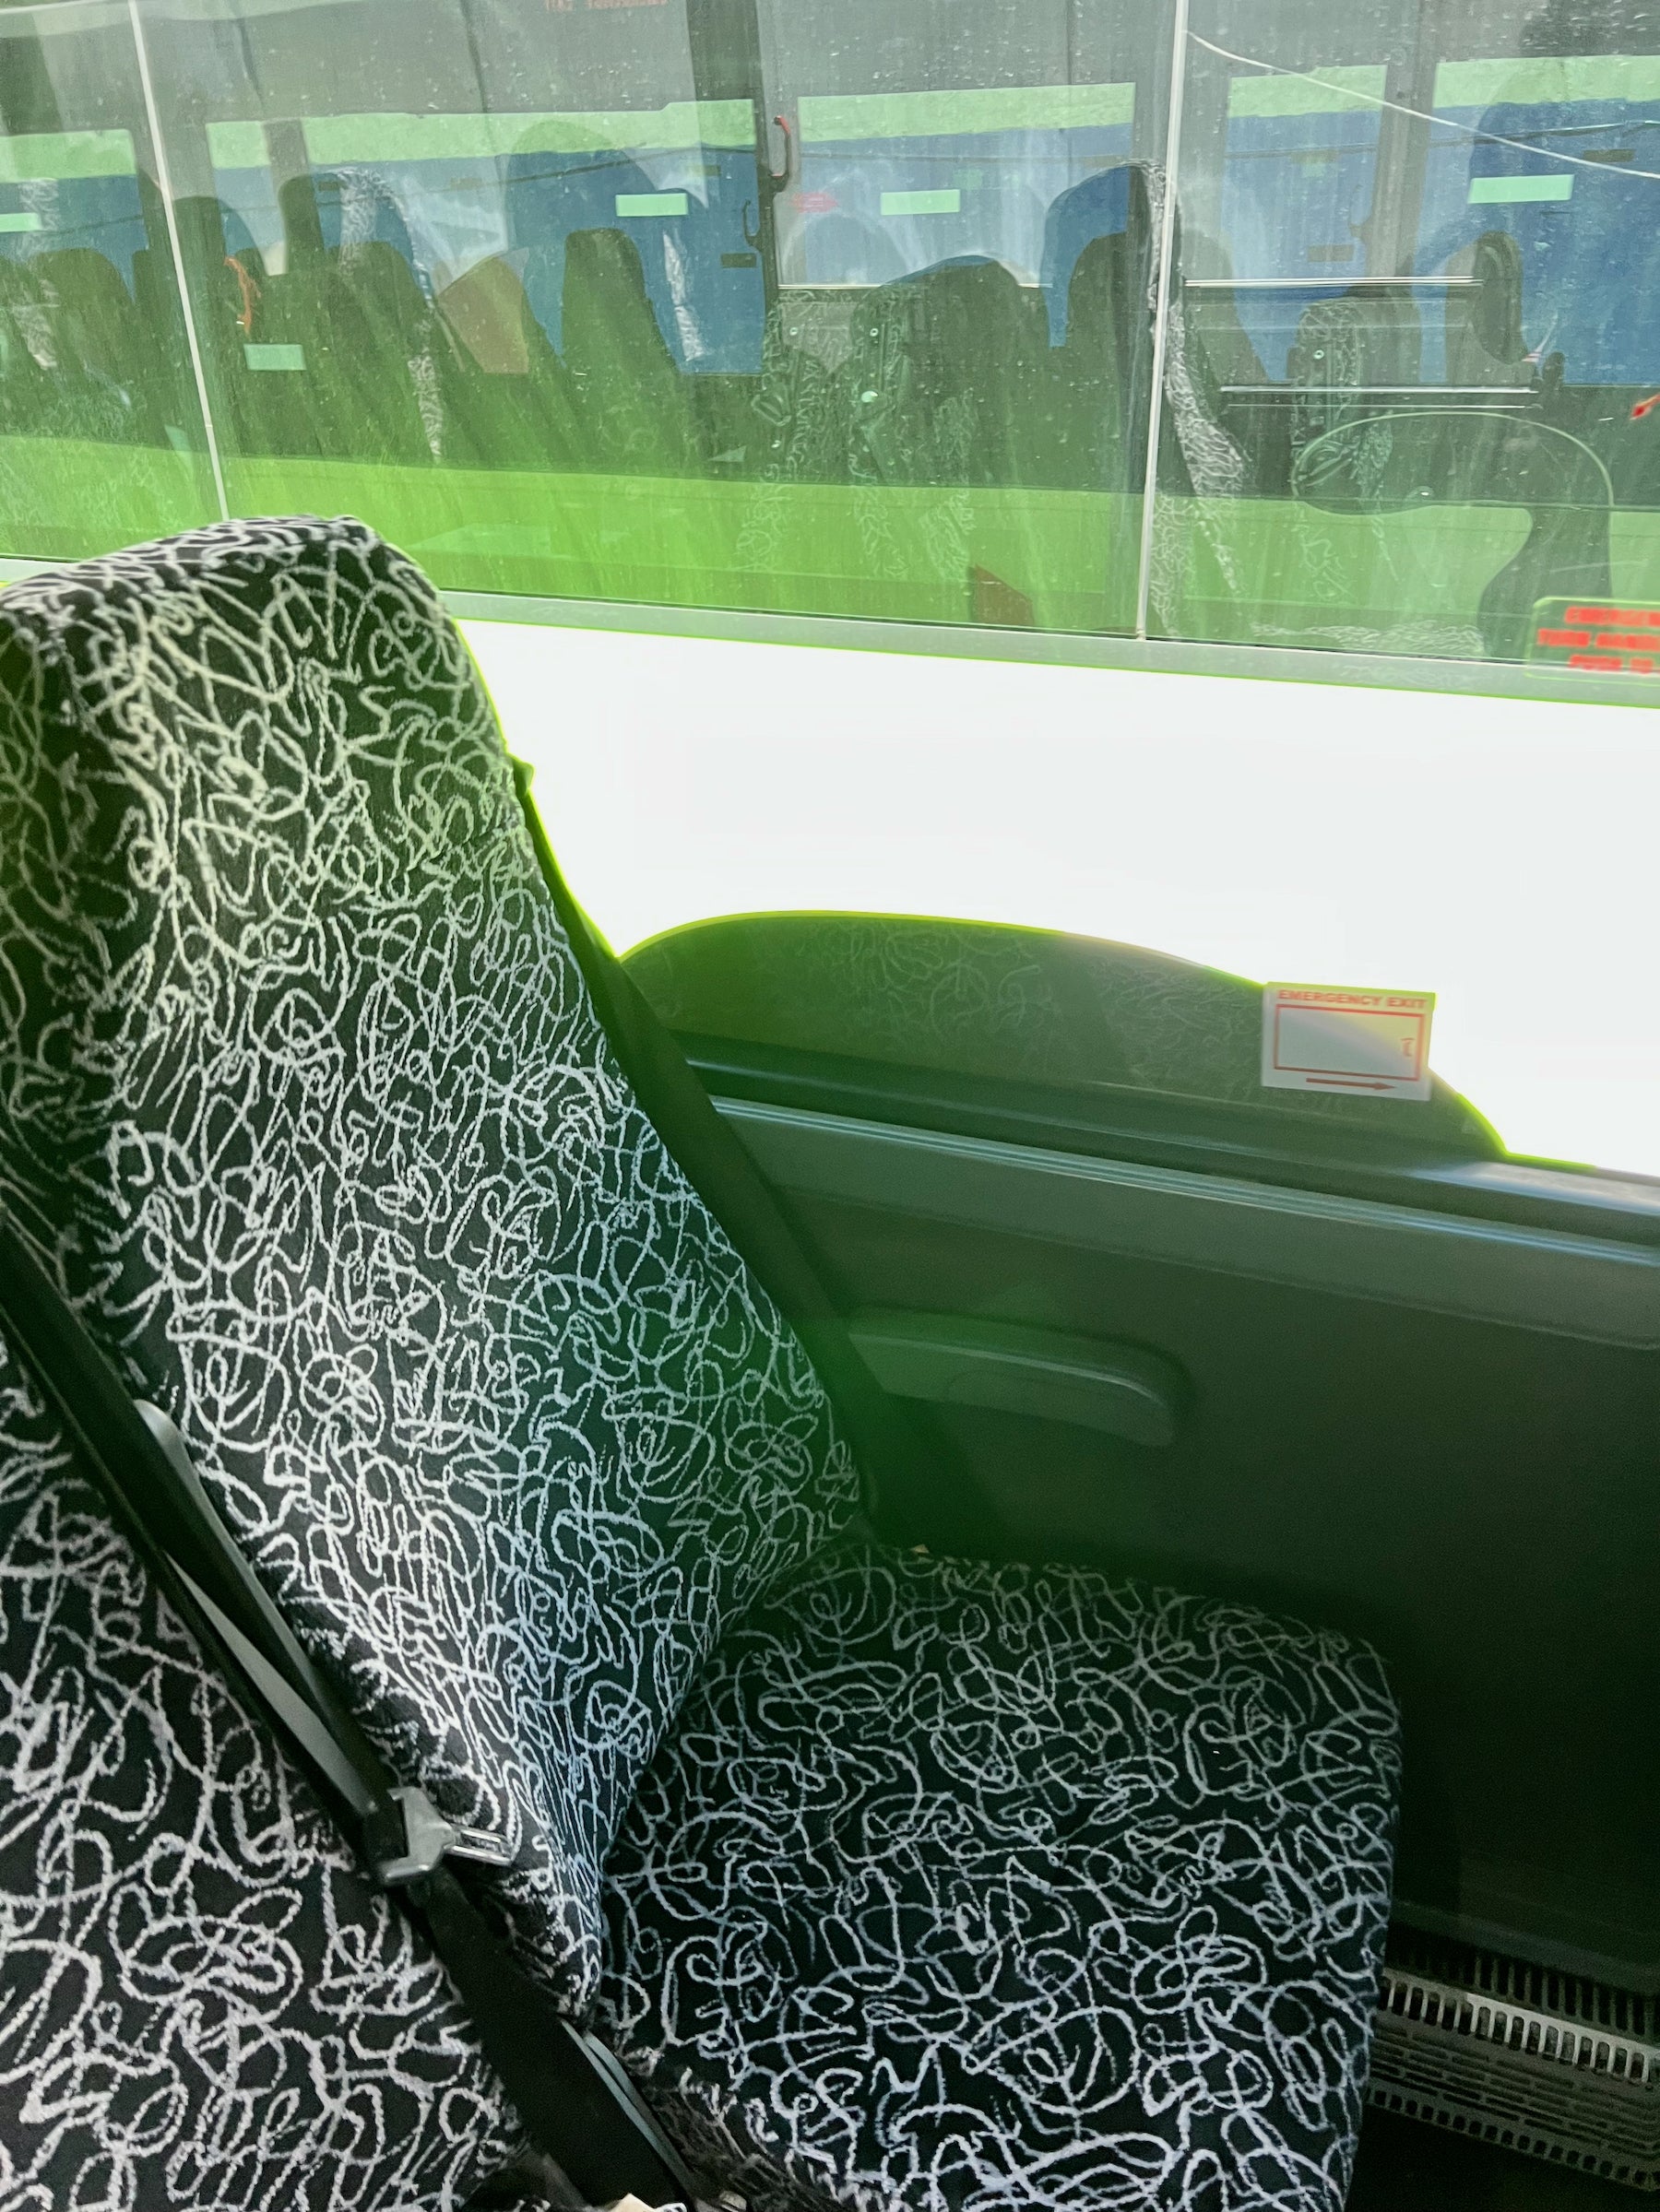 Flixbus seat